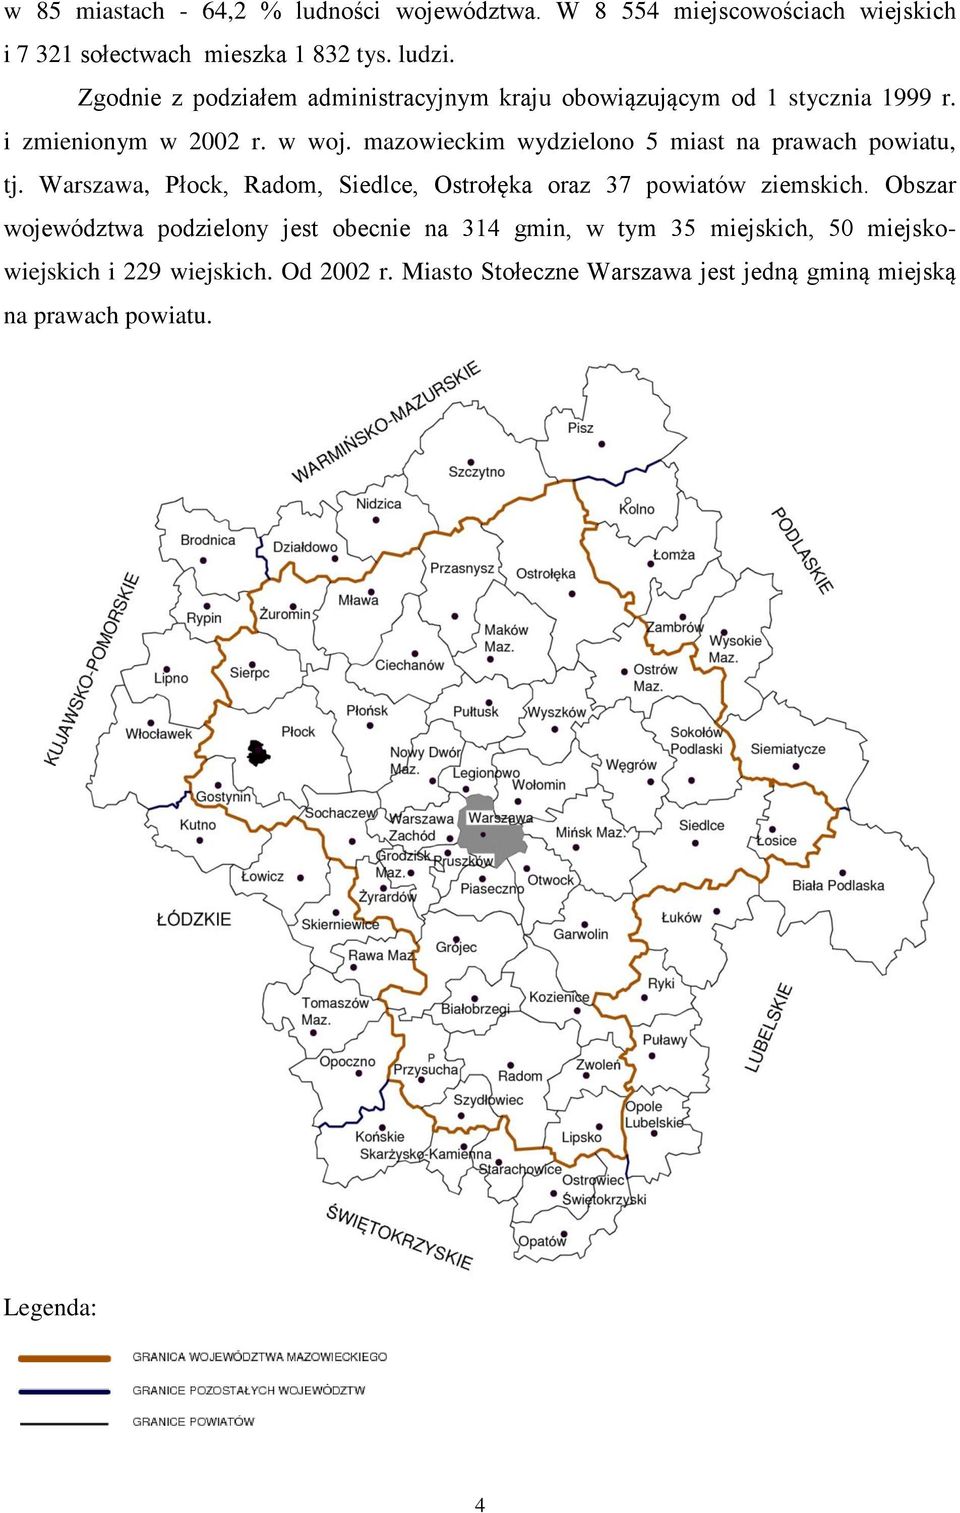 mazowieckim wydzielono 5 miast na prawach powiatu, tj. Warszawa, Płock, Radom, Siedlce, Ostrołęka oraz 37 powiatów ziemskich.